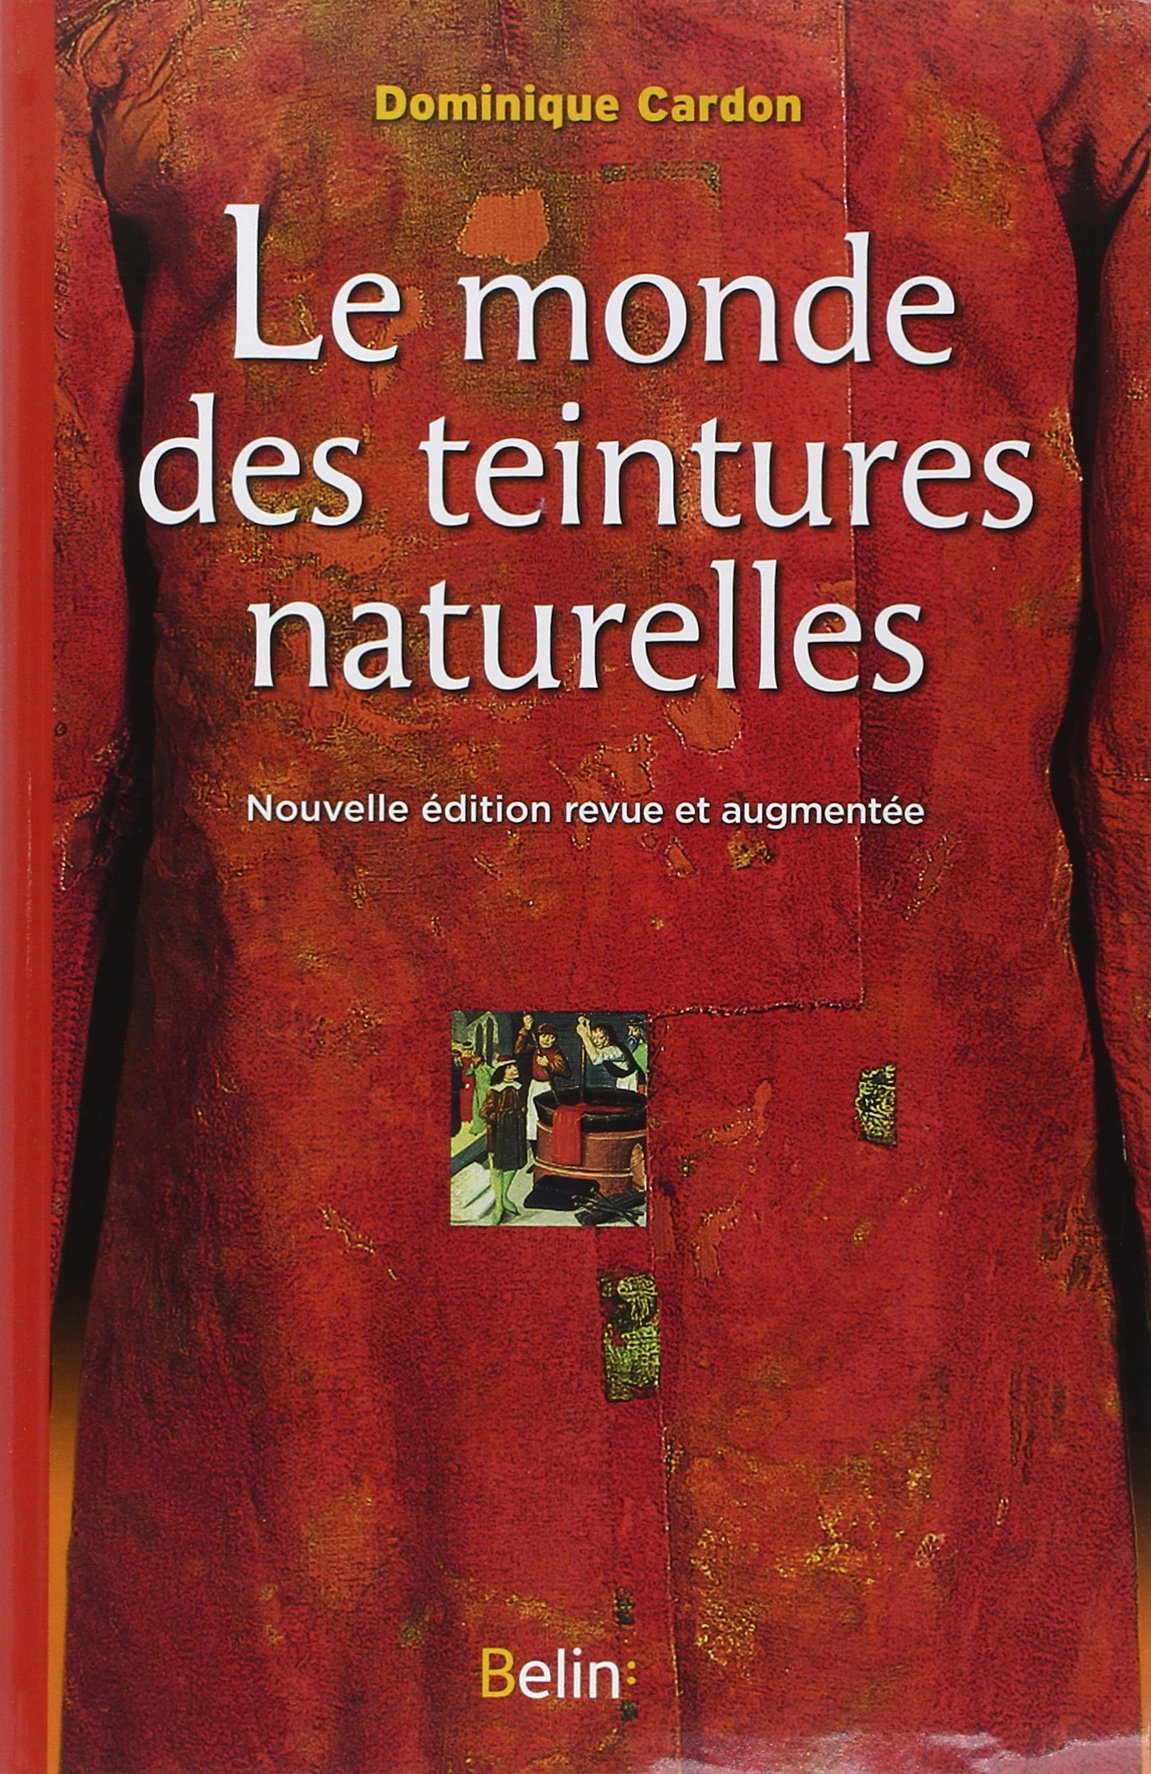 Le monde des teintures naturelles, 2014, nvlle éd. rev. et augm., 783 p.